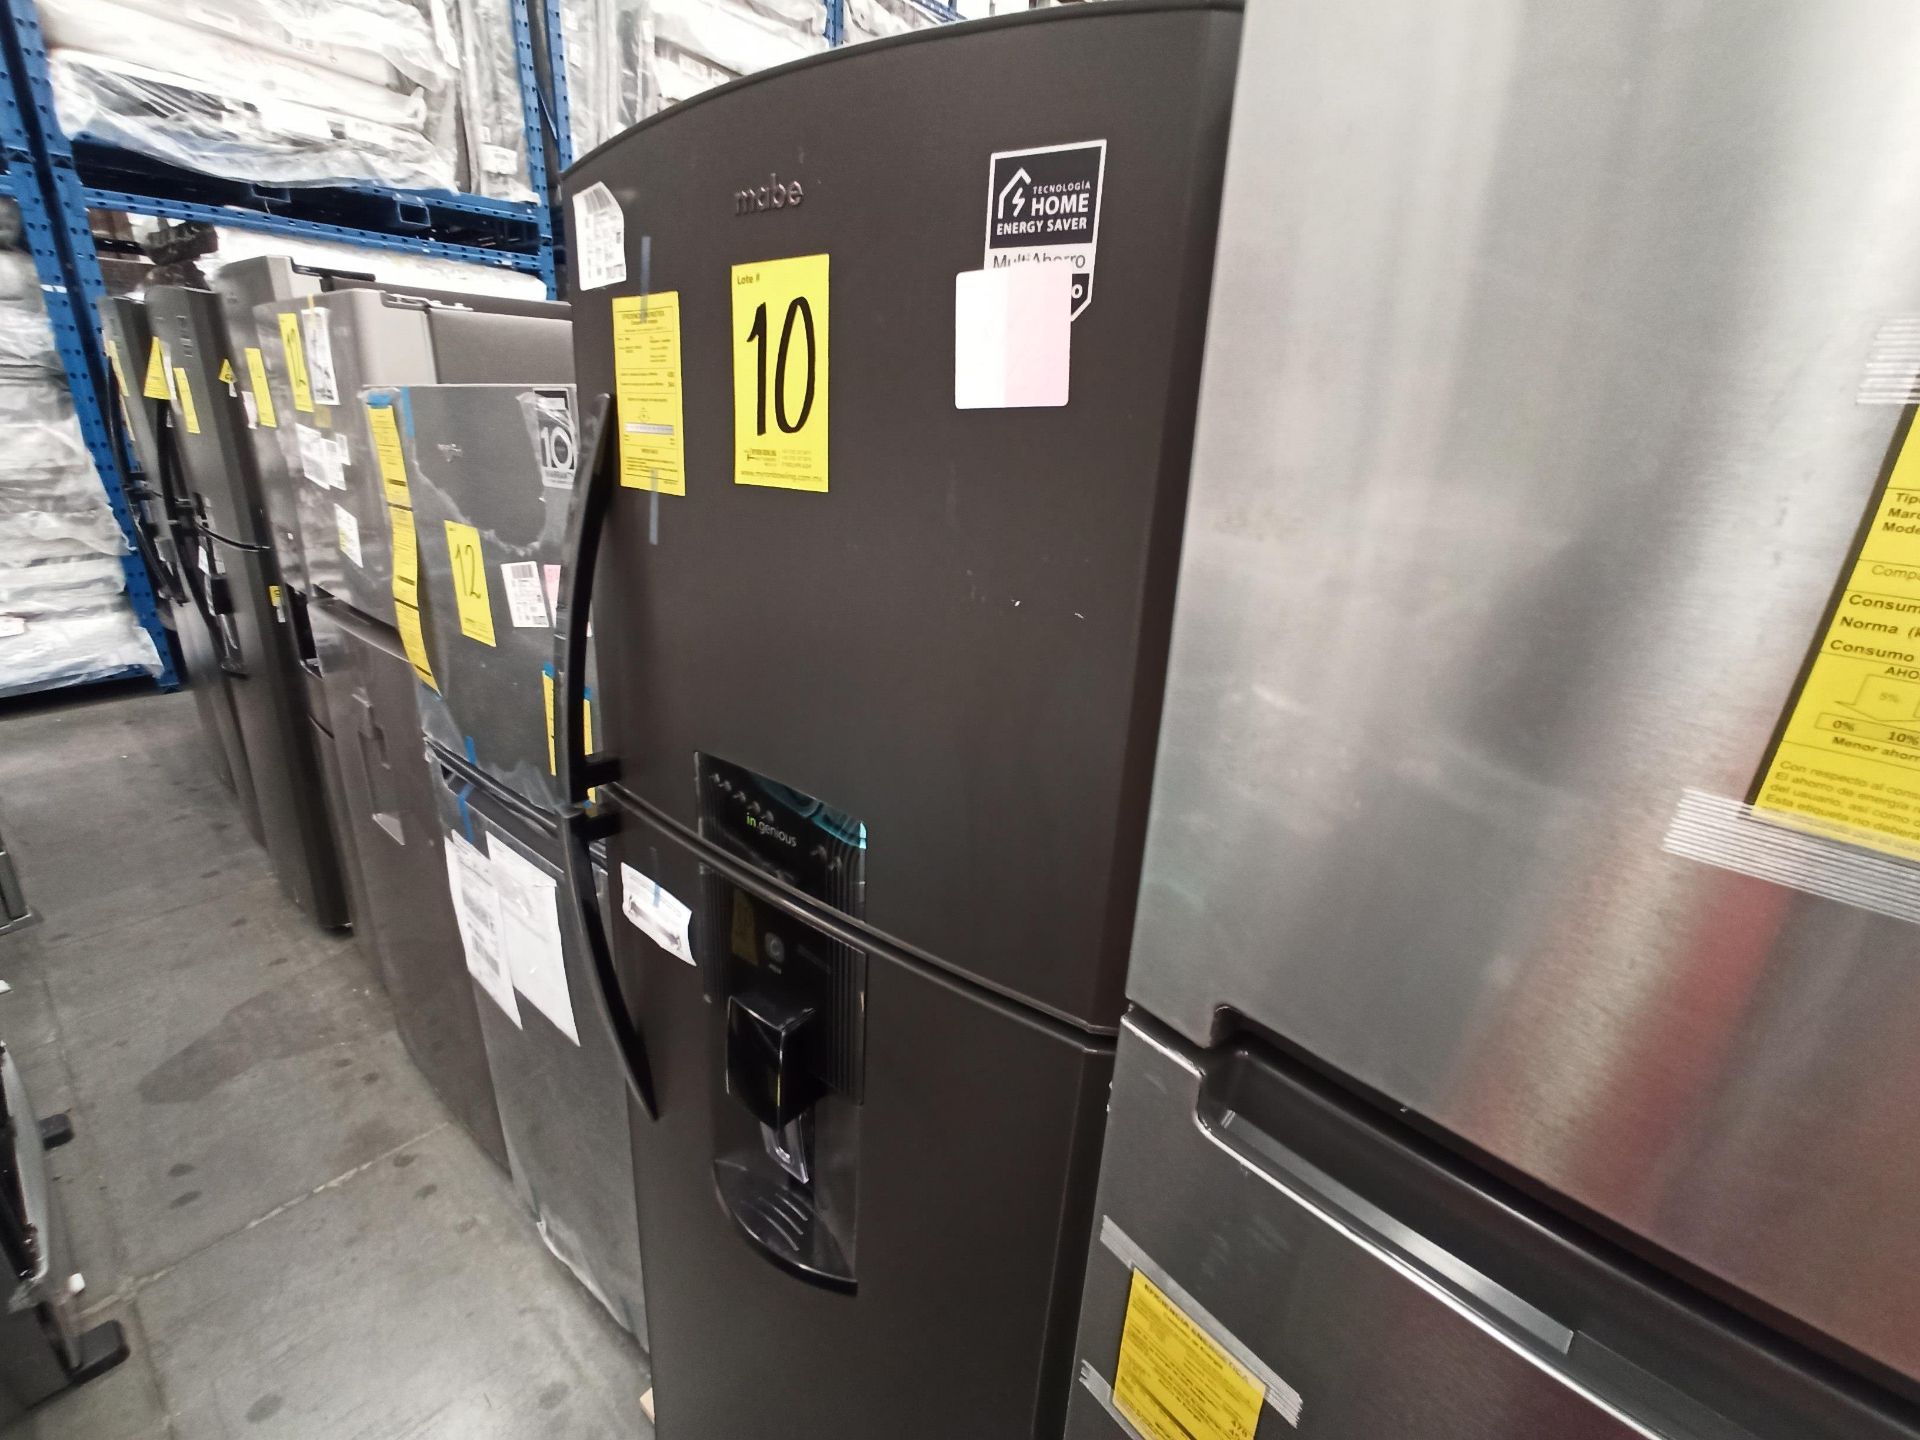 Lote de 2 refrigeradores contiene: 1 Refrigerador Marca WHIRLPOOL, Modelo WT1818A, Serie 878989, Co - Image 13 of 16